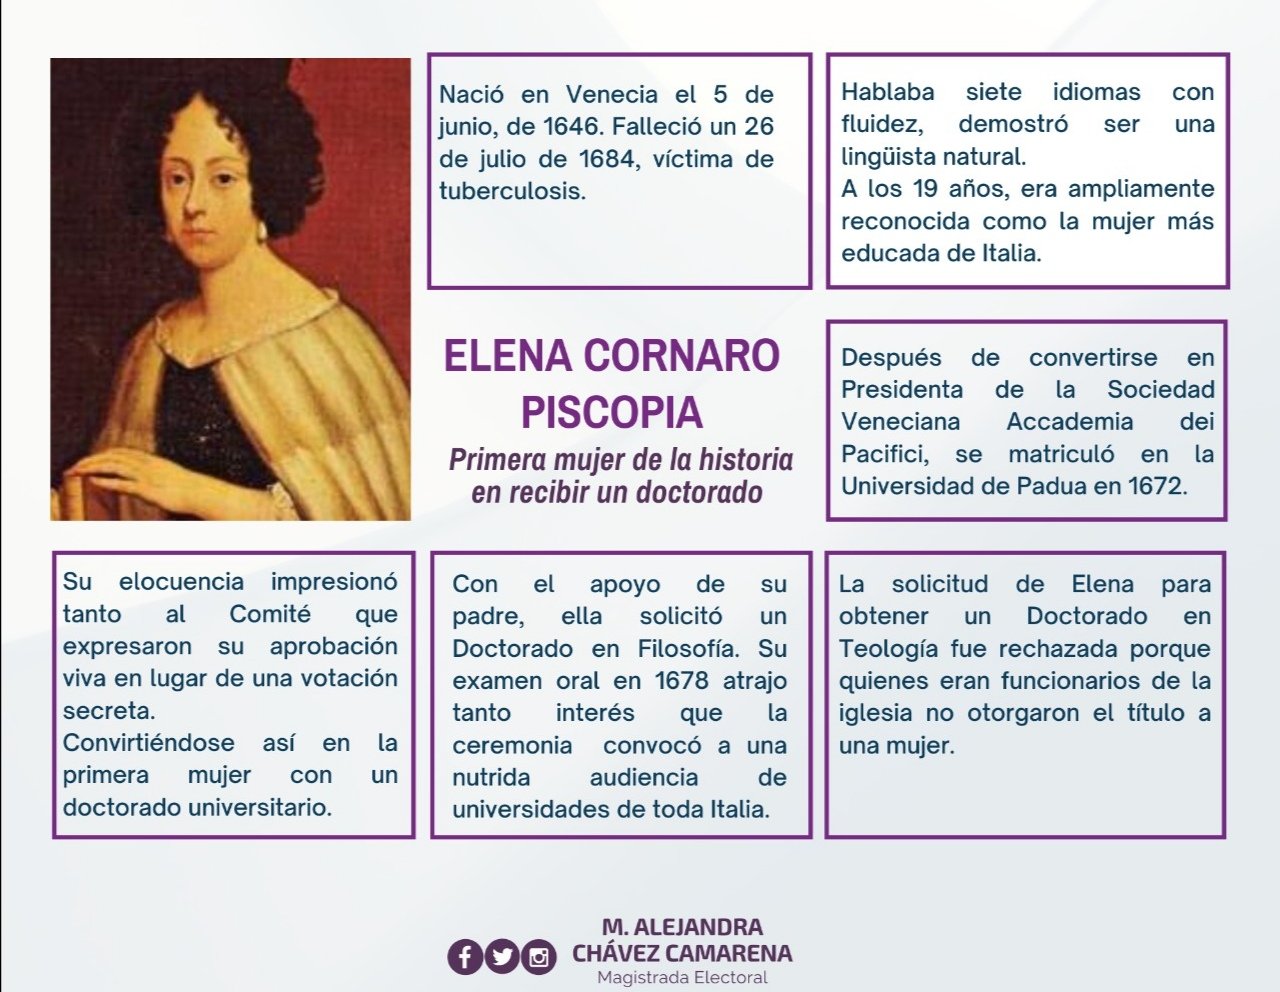 M. Alejandra Chávez Camarena on Twitter: "Ella es Elena Cornaro Piscopia, una mujer que se afianzó en un mundo de hombres y logró convertirse en la primera mujer en recibir un doctorado.